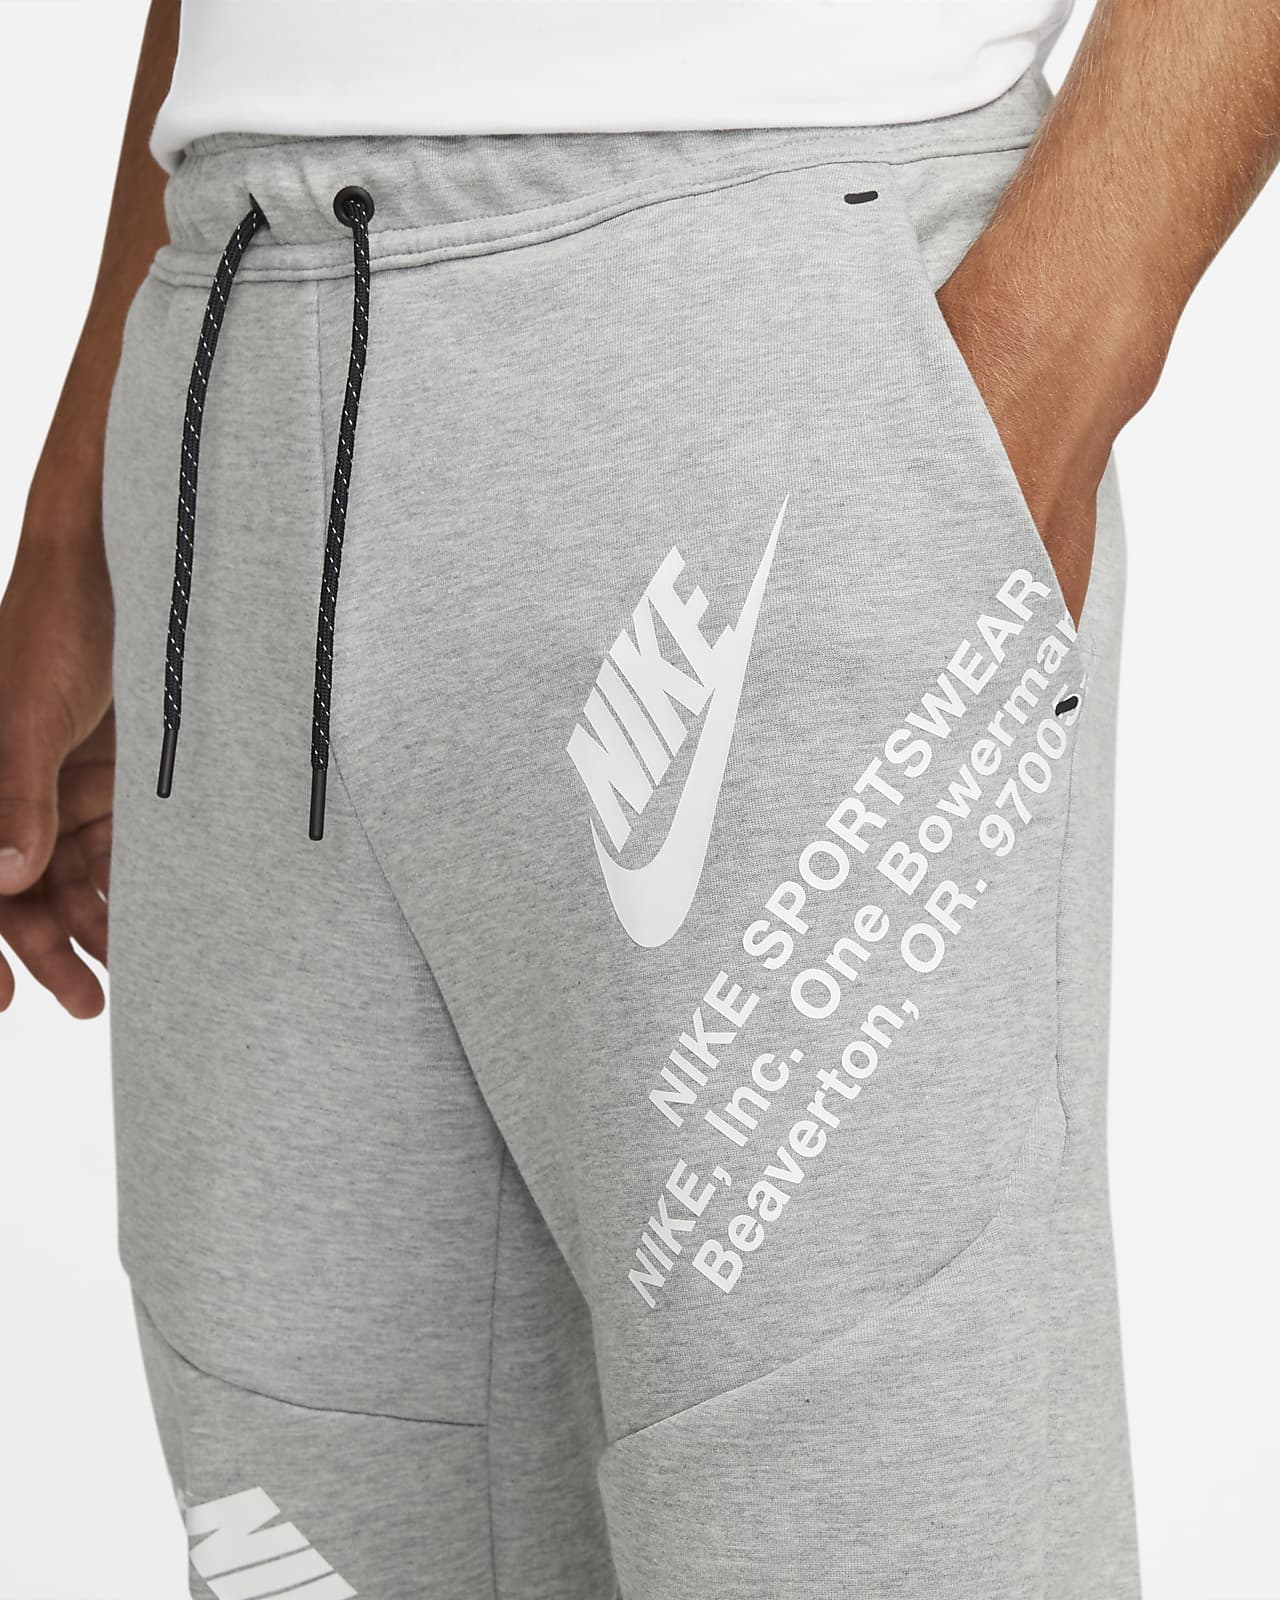 Nike Sportswear Fleece Men's Joggers. Nike.com